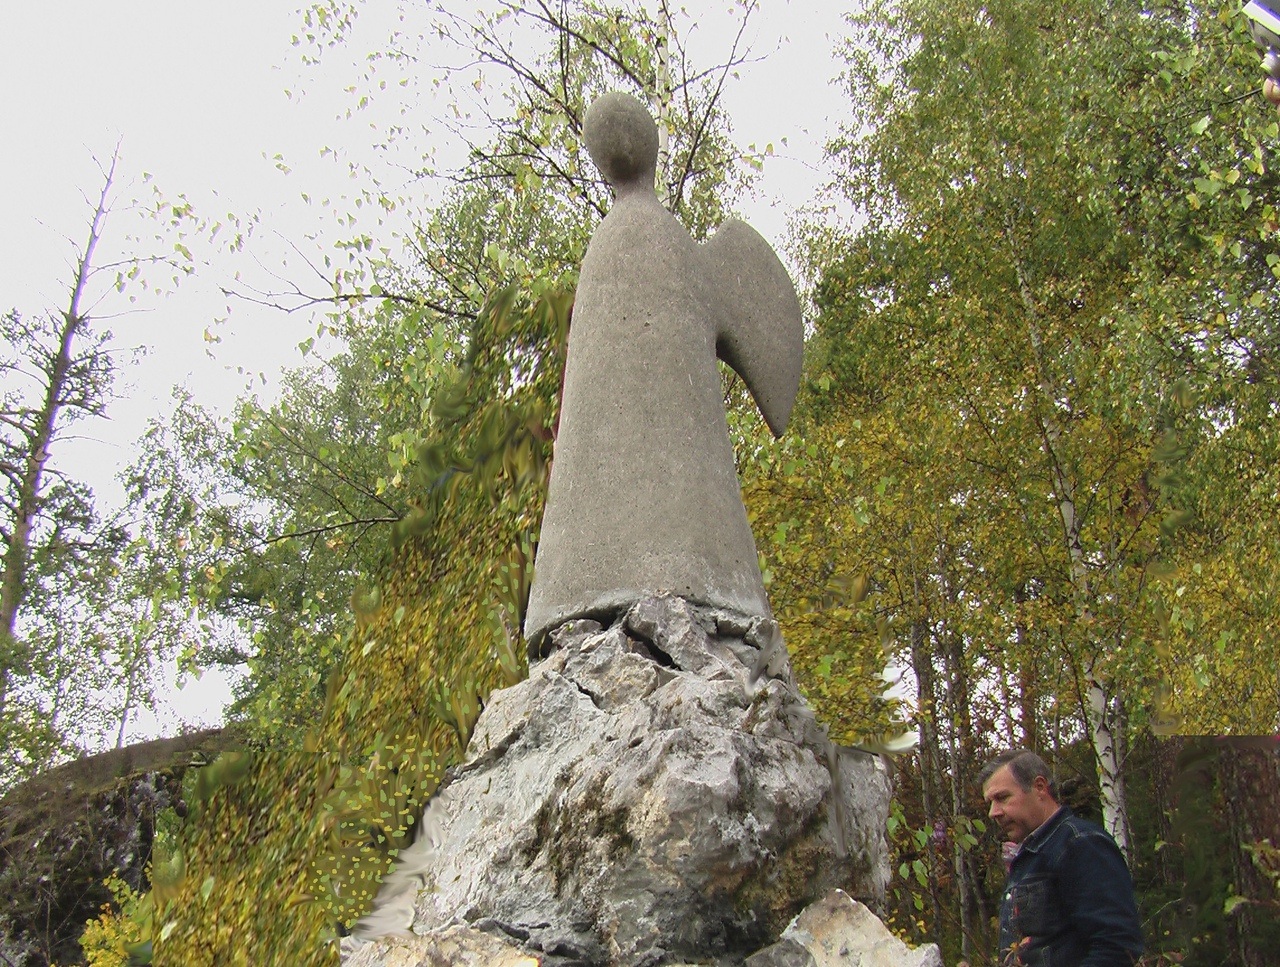 Ангел появился в парке «Оленьи ручьи» в 2005 году и стал символом этого места